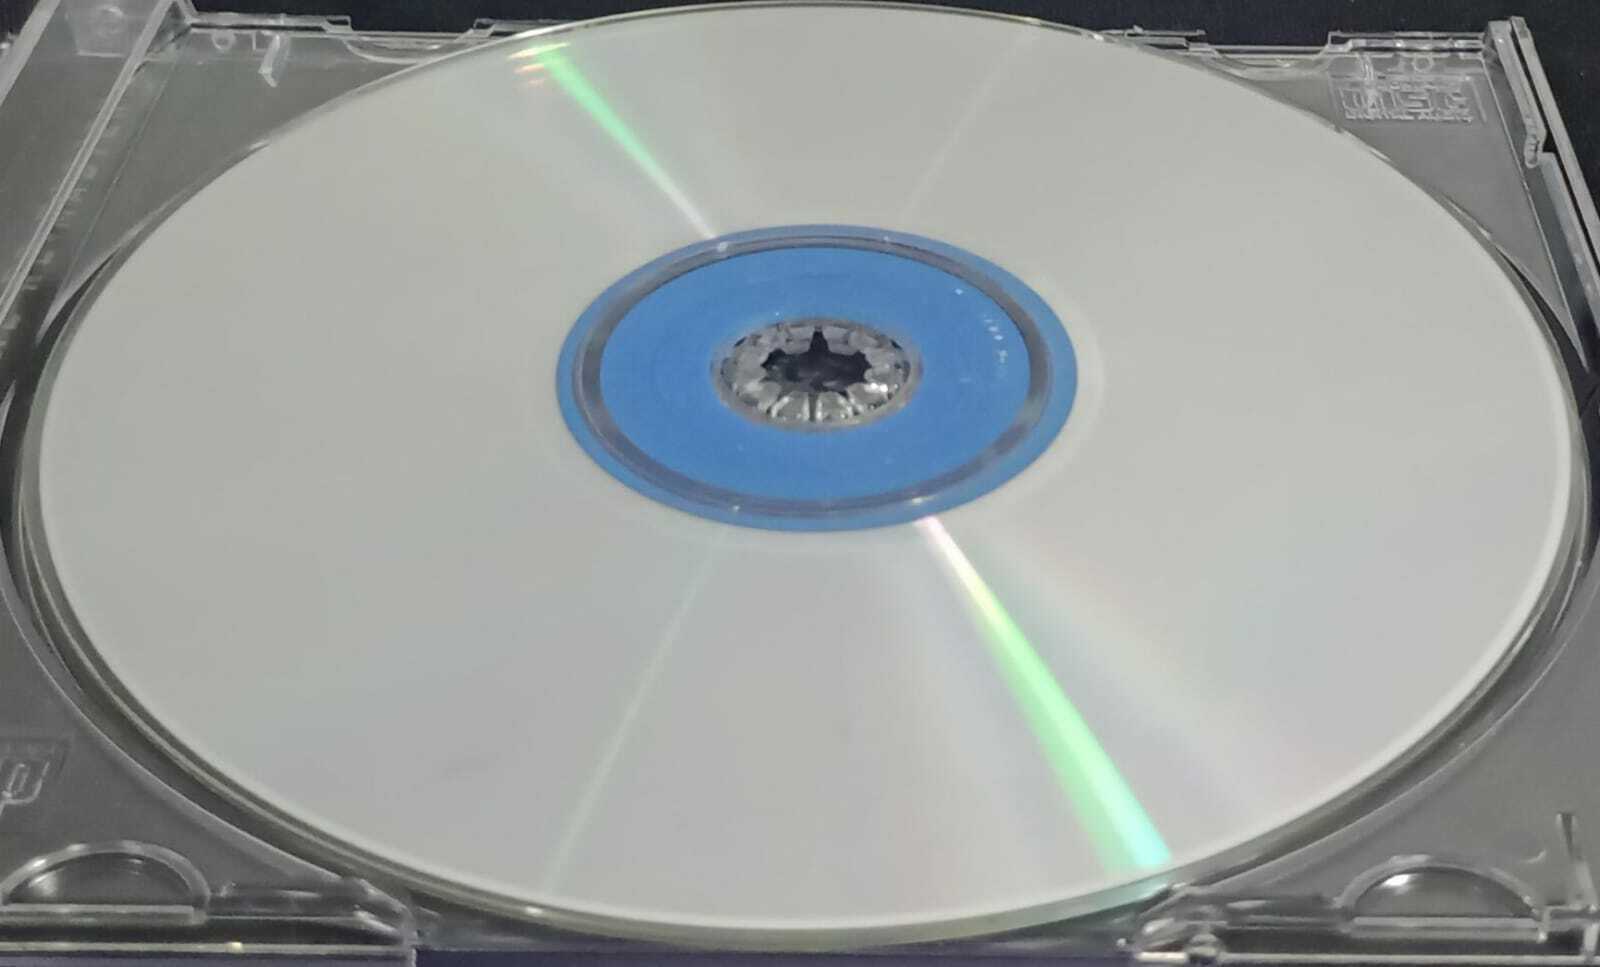 CD - Ozzy Osbourne - Blizzard of Ozz (EU)